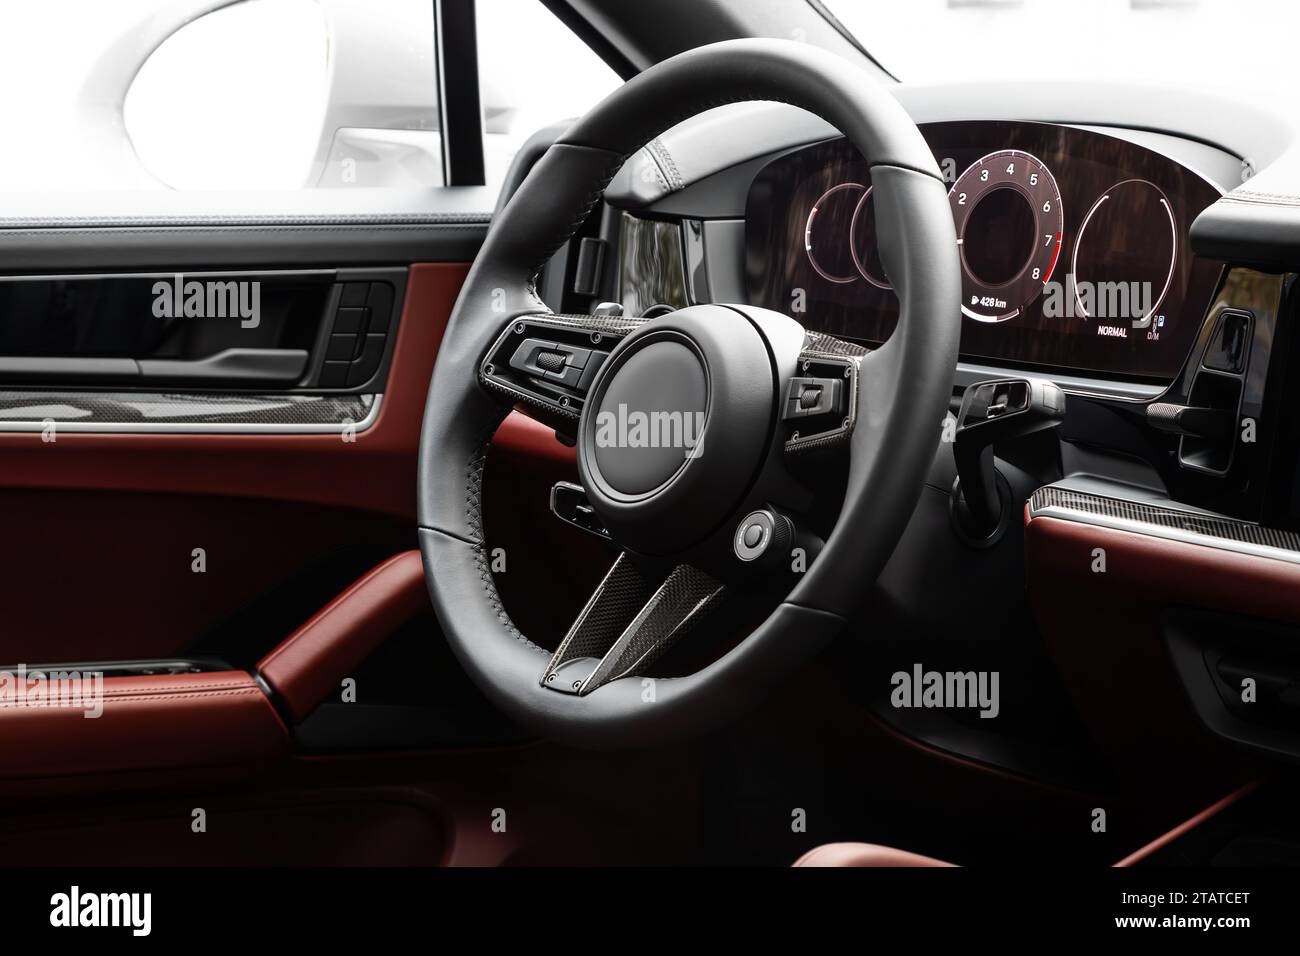 Interni di una nuova e moderna SUV con volante, leva del cambio e cruscotto, climatizzatore, tachimetro, display. Interni in pelle rossa Foto Stock